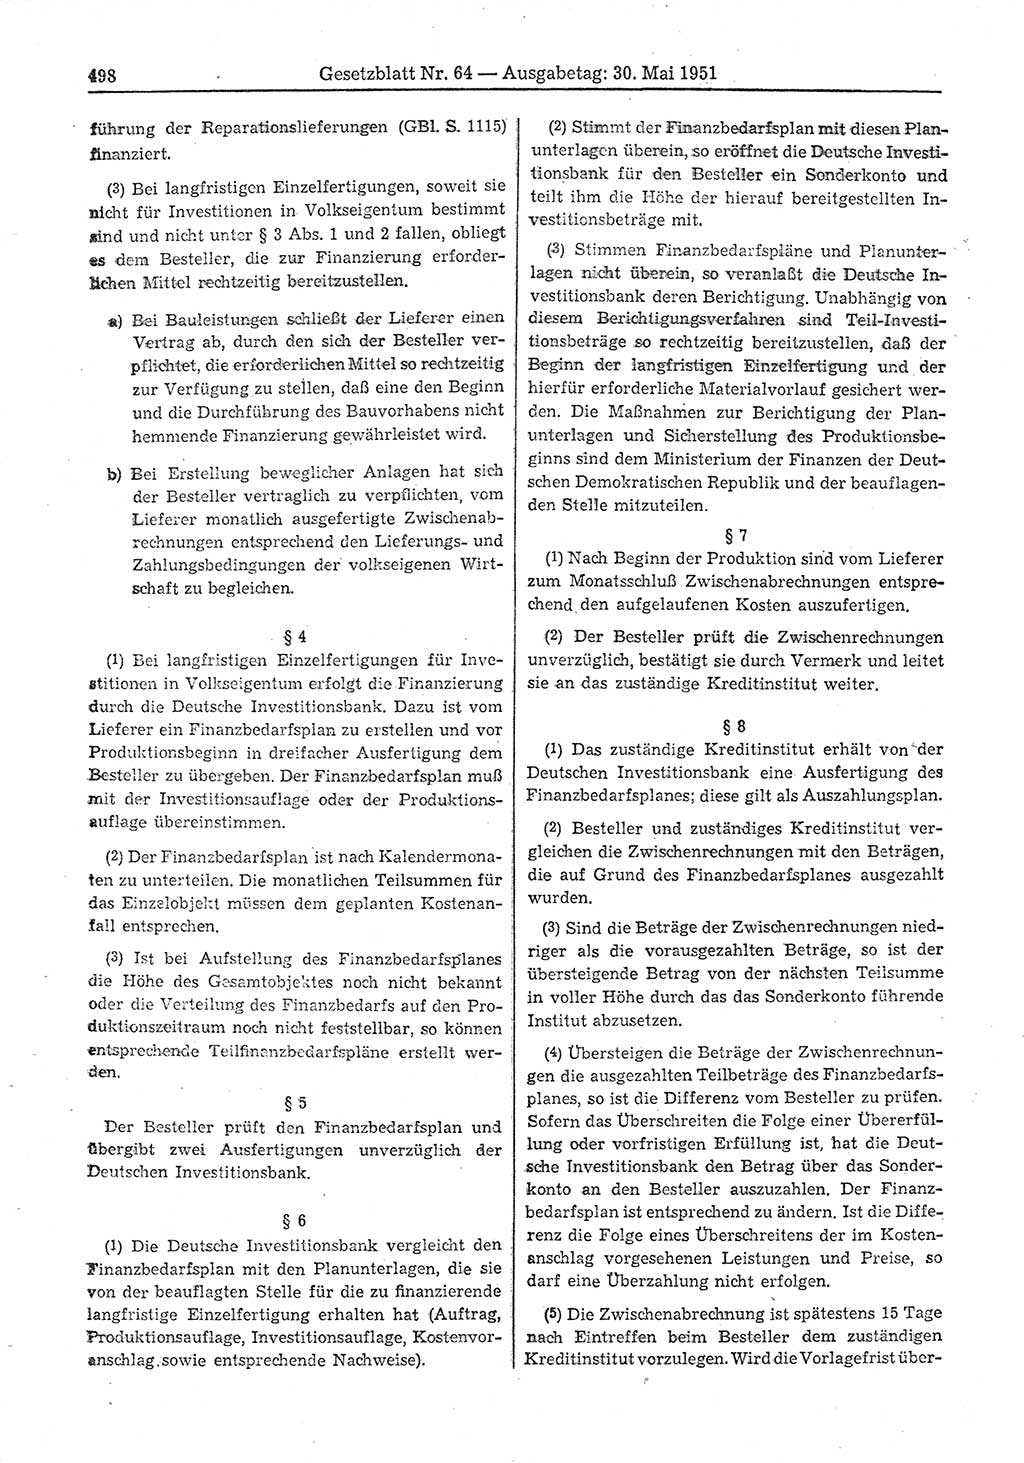 Gesetzblatt (GBl.) der Deutschen Demokratischen Republik (DDR) 1951, Seite 498 (GBl. DDR 1951, S. 498)